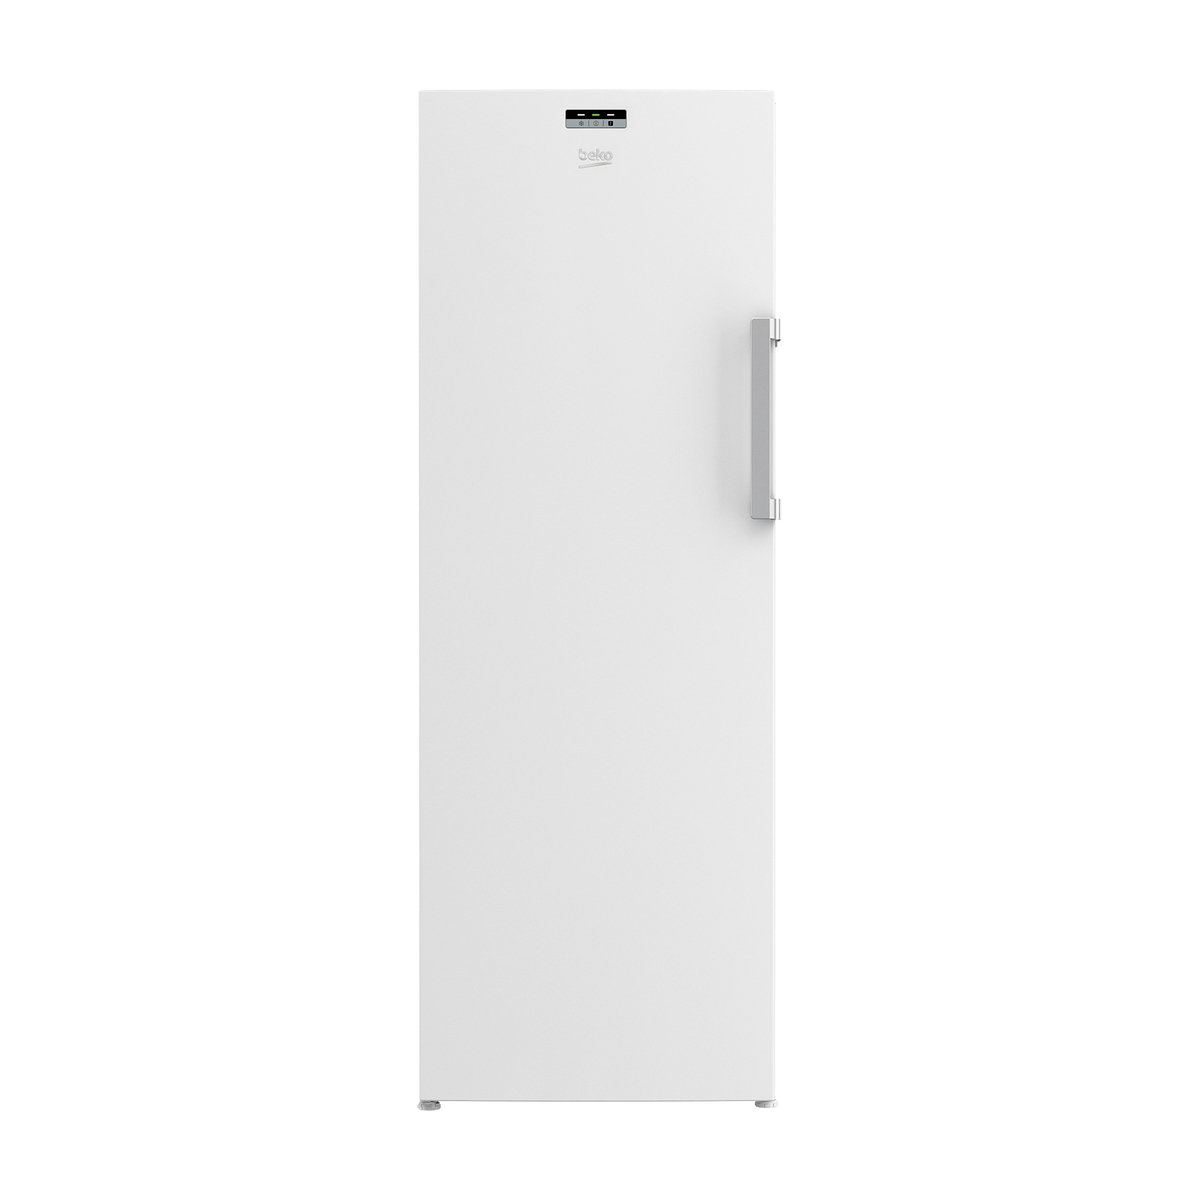 اشتري قم بشراء Beko Upright Freezer RFNE320L24W 290Ltr Online at Best Price من الموقع - من لولو هايبر ماركت Upright Freezers في الكويت